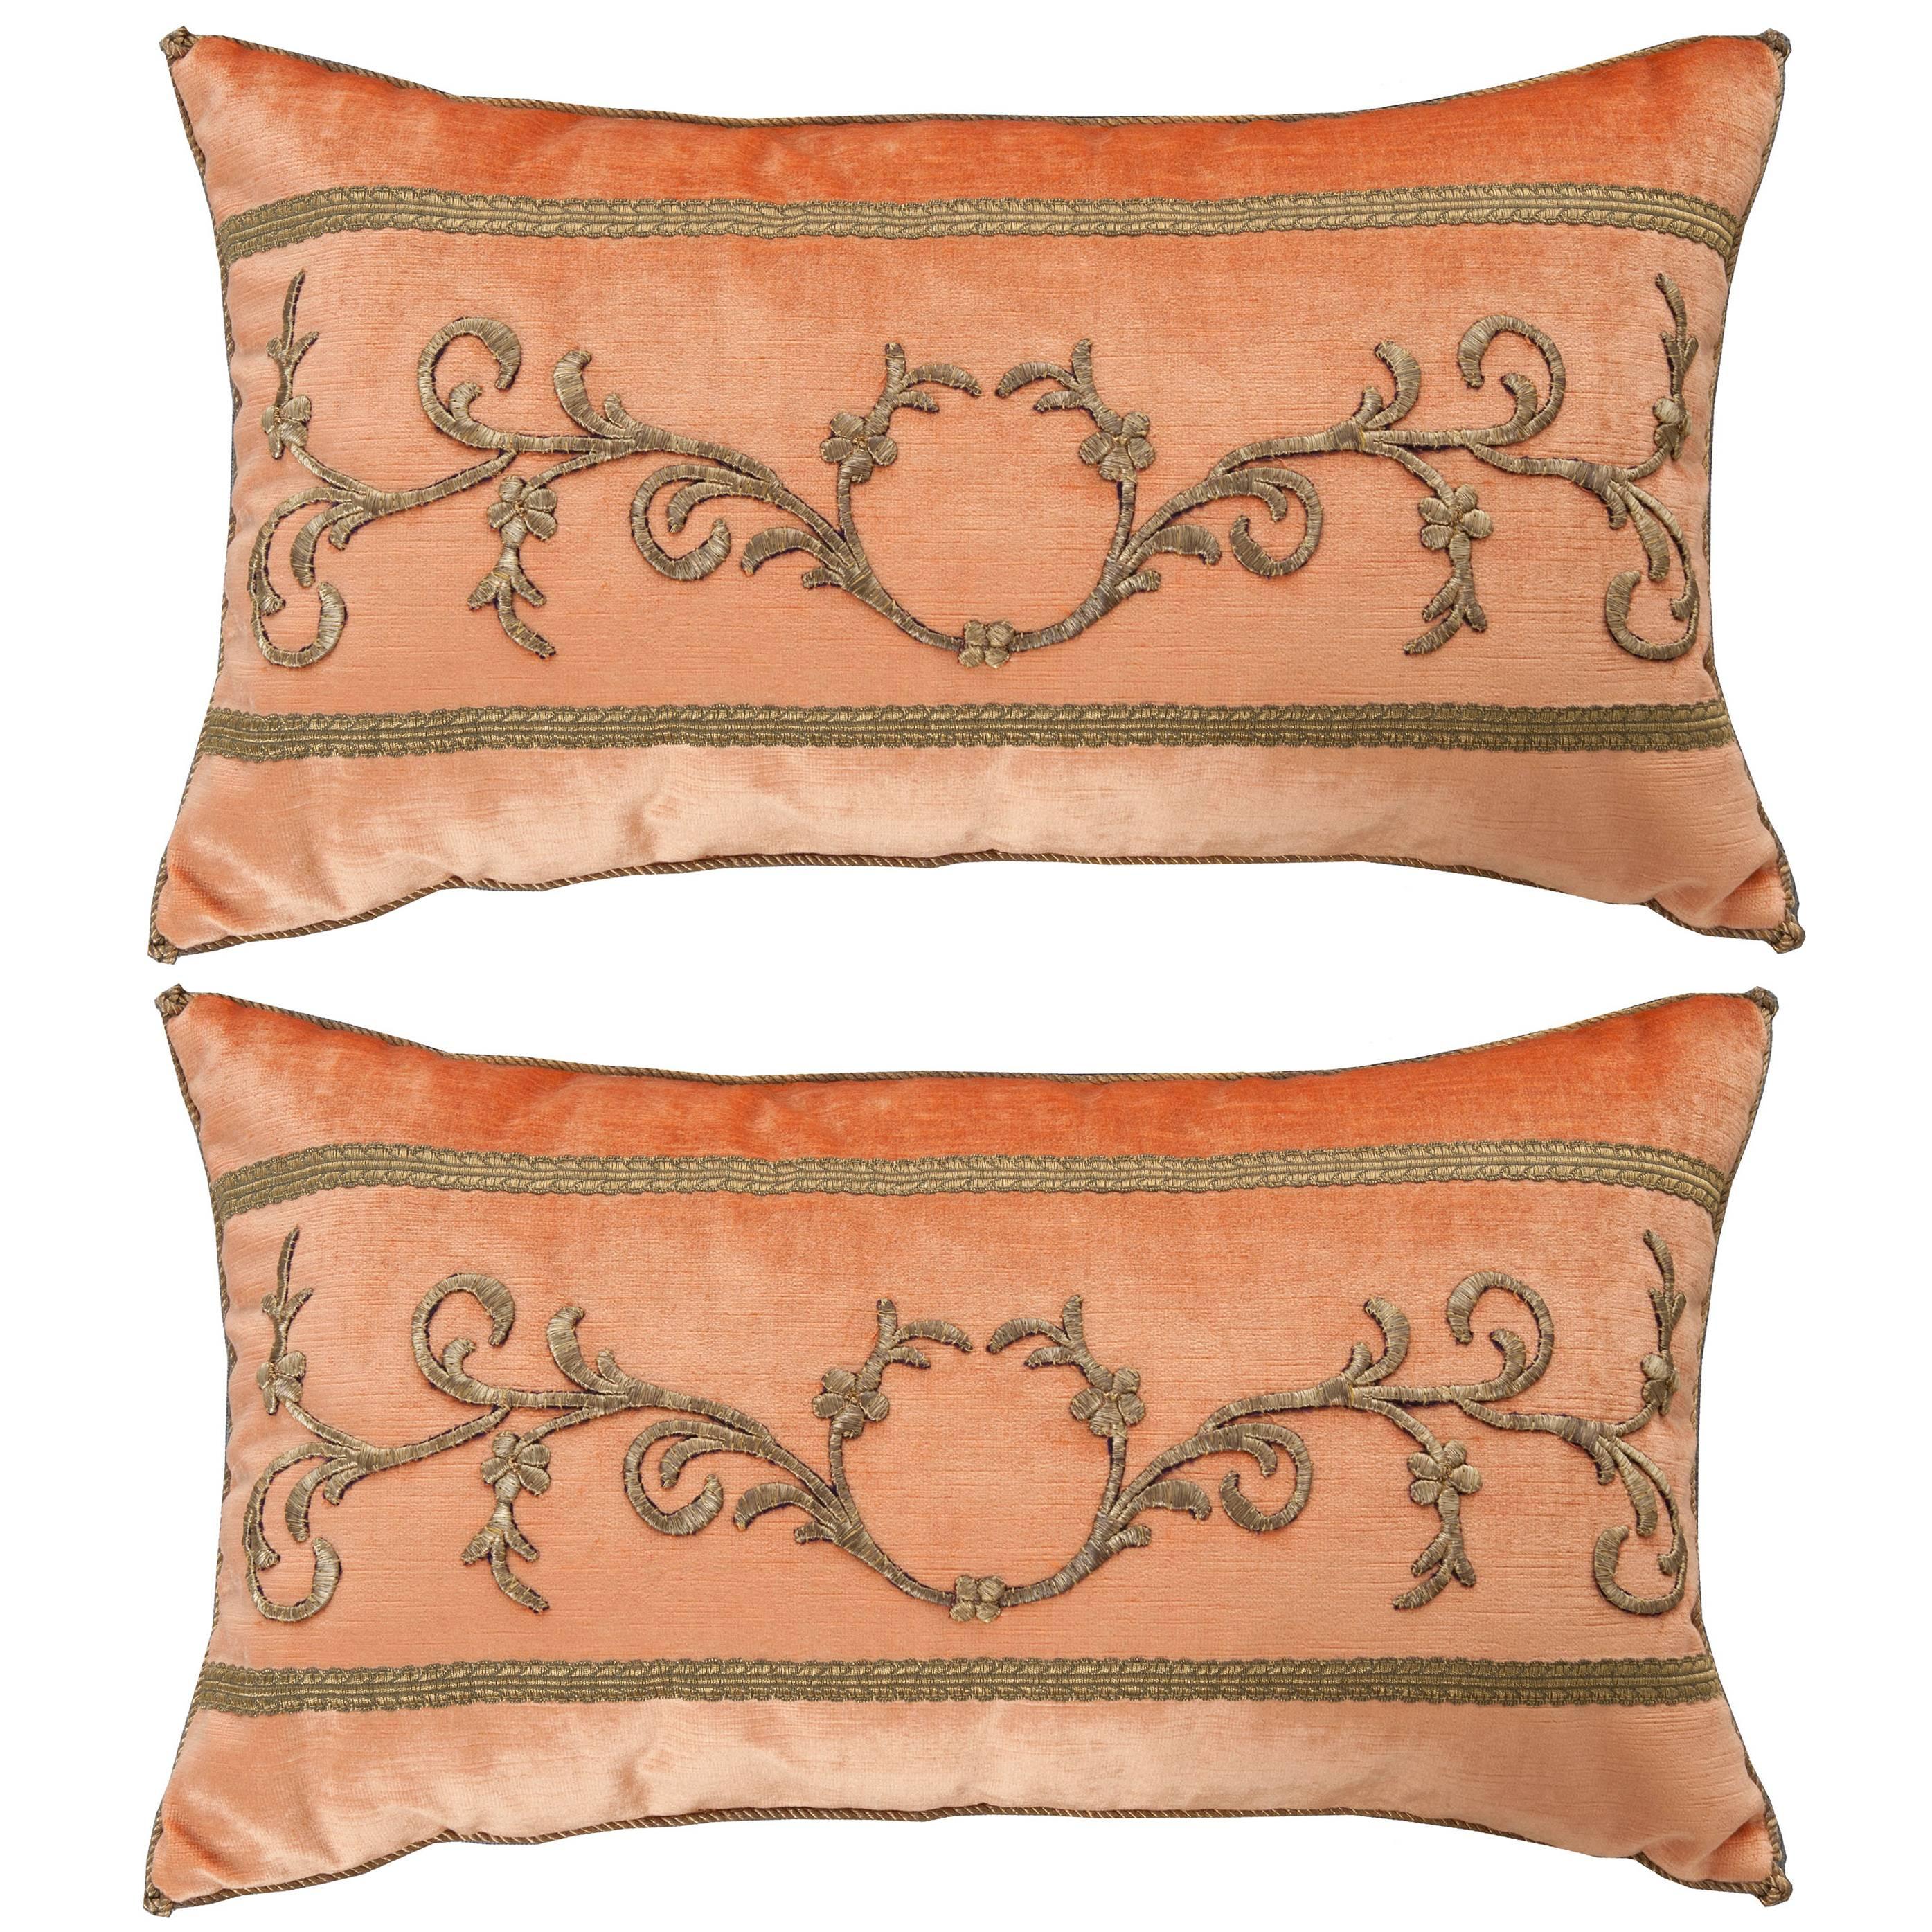 Antique Textile Pillows by B.Viz Designs